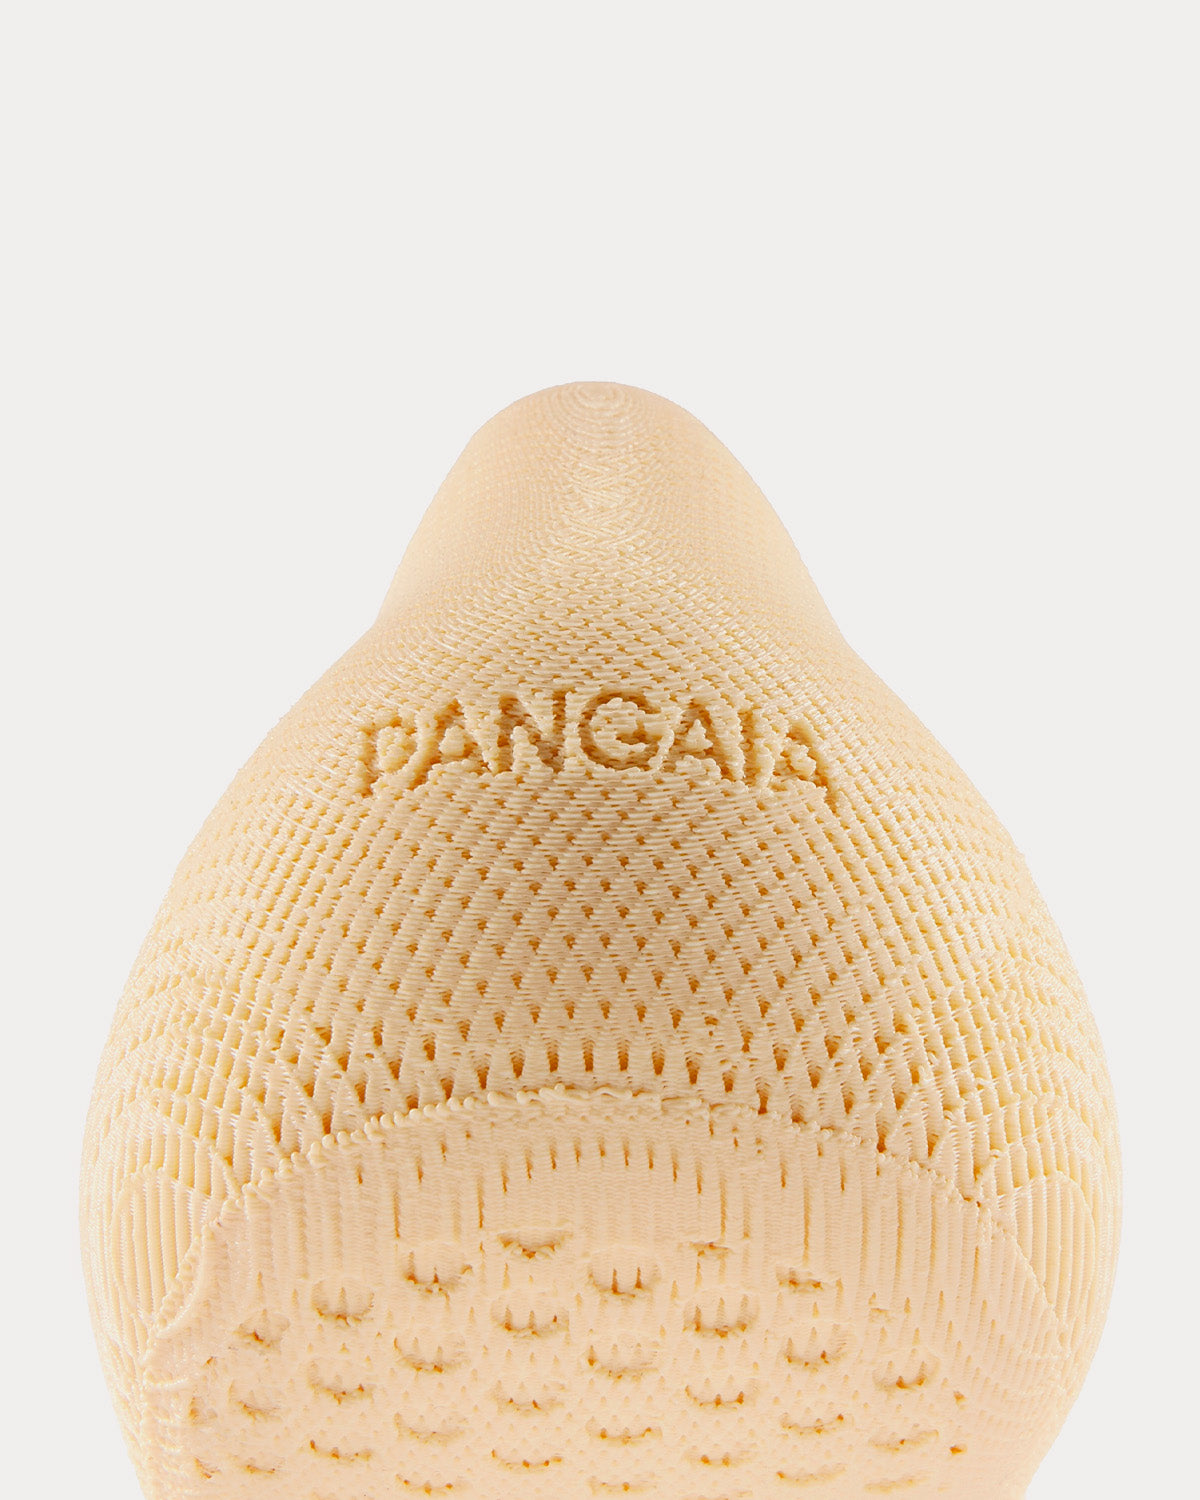 Pangaia - Absolute Sneaker Beige Slip Ons